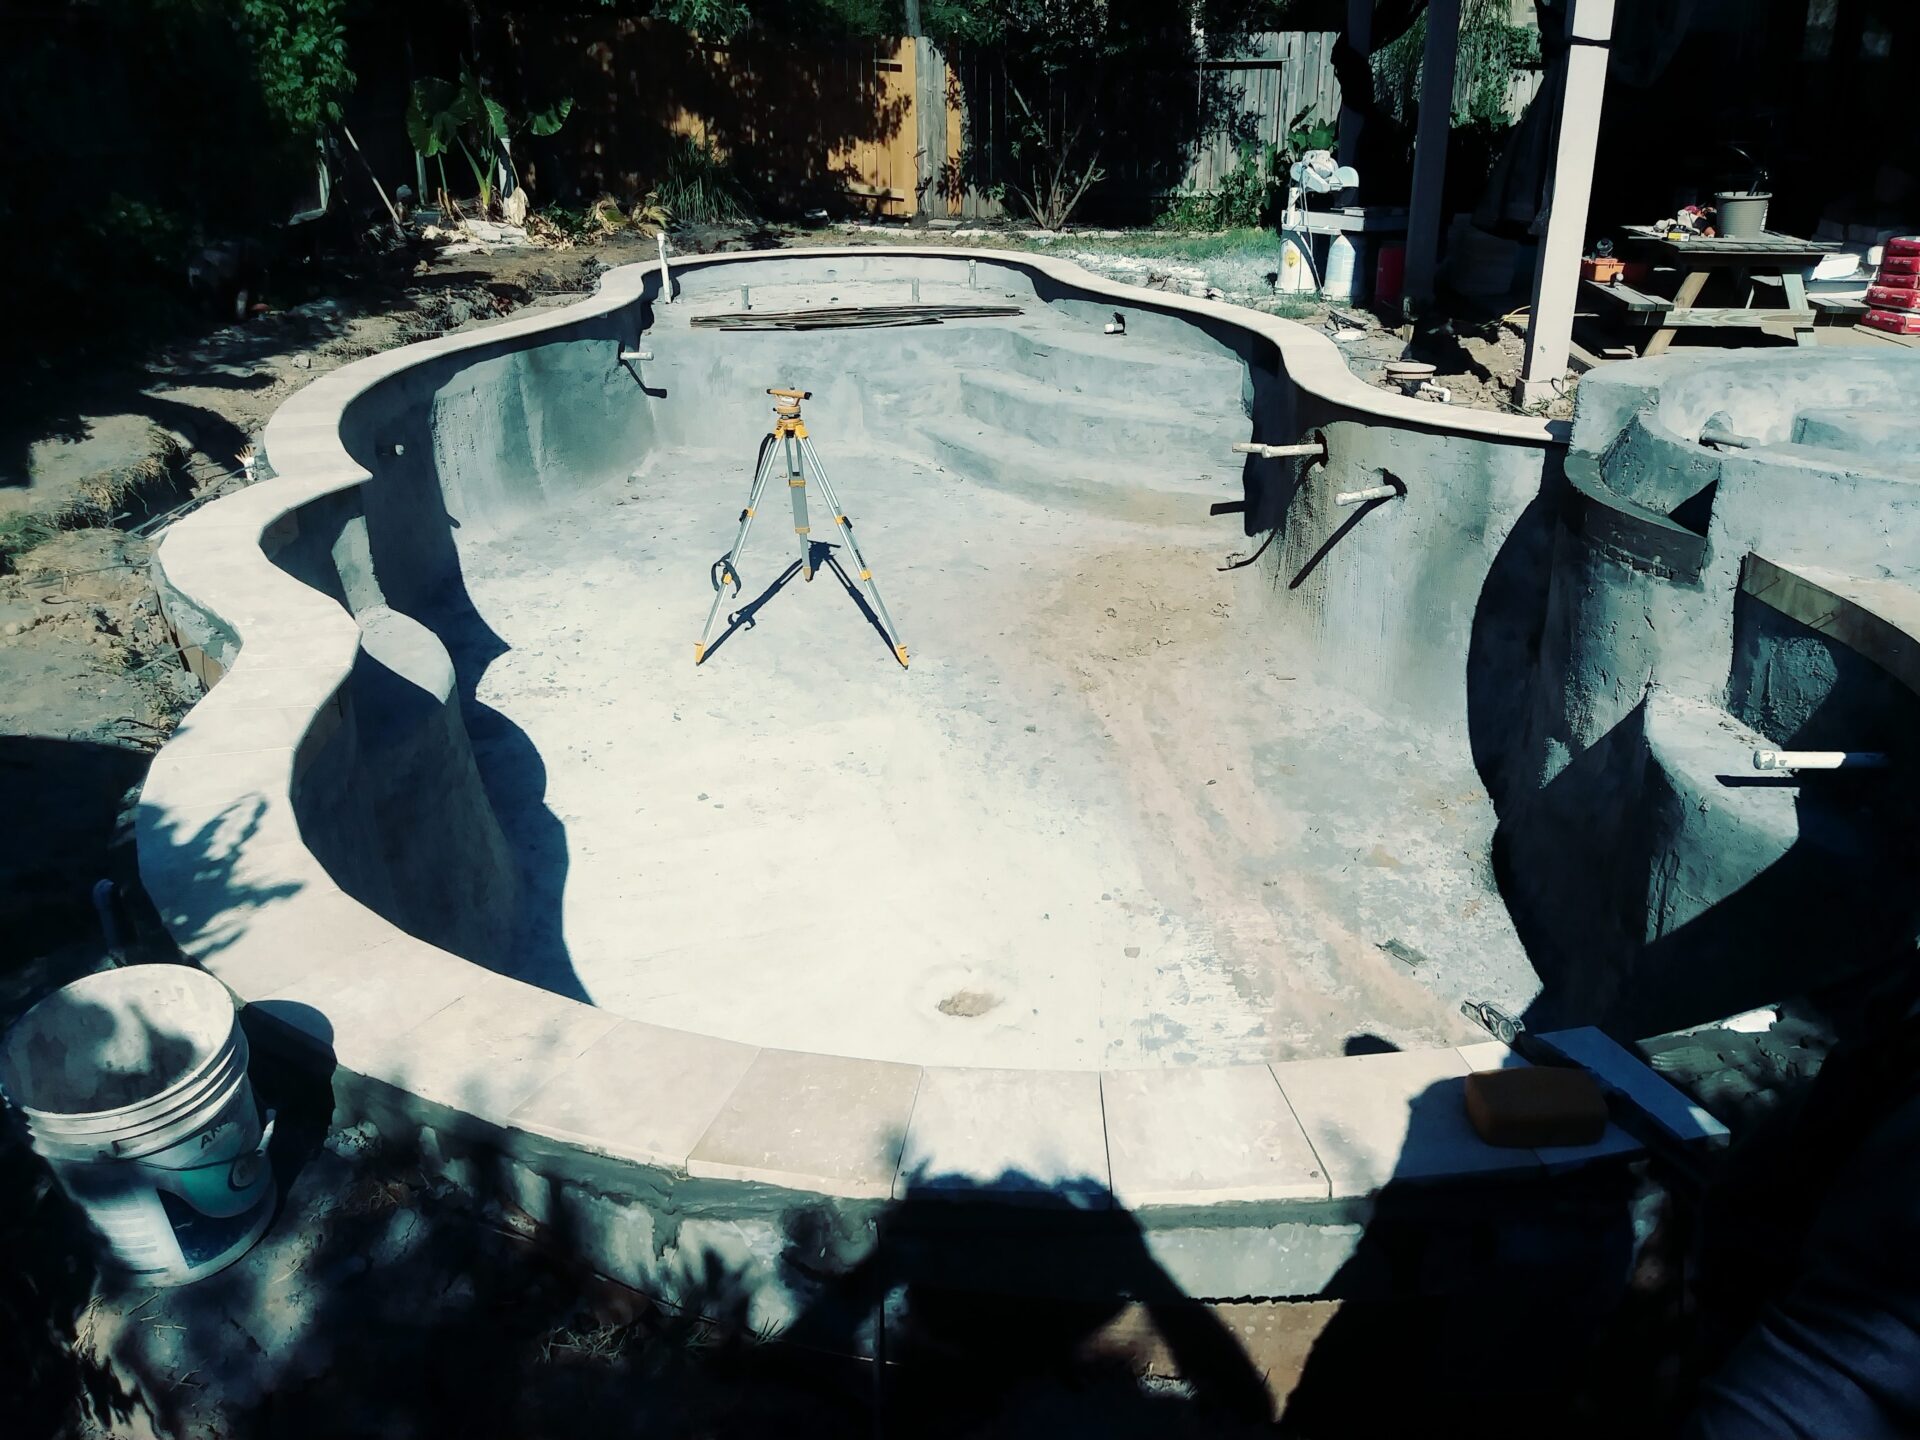 Pool Remodel - Fairfield - Before Image007